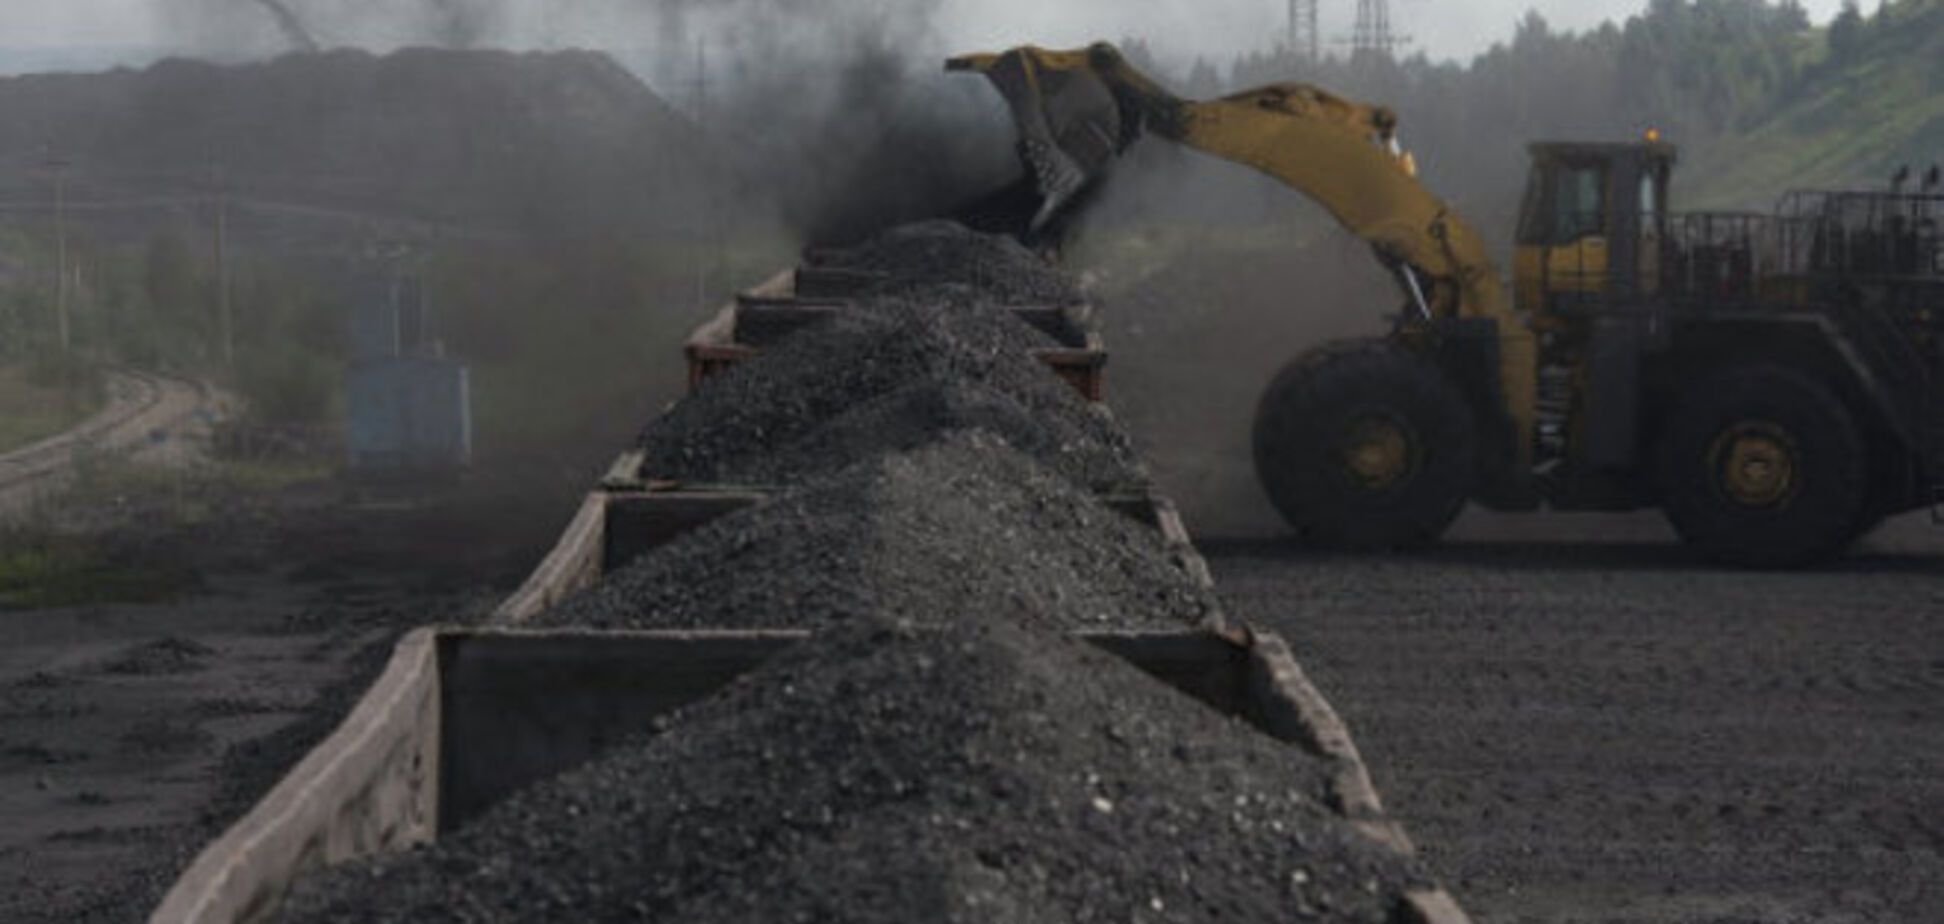 Украина купила еще два корабля угля из ЮАР, который 'не горит' - СМИ